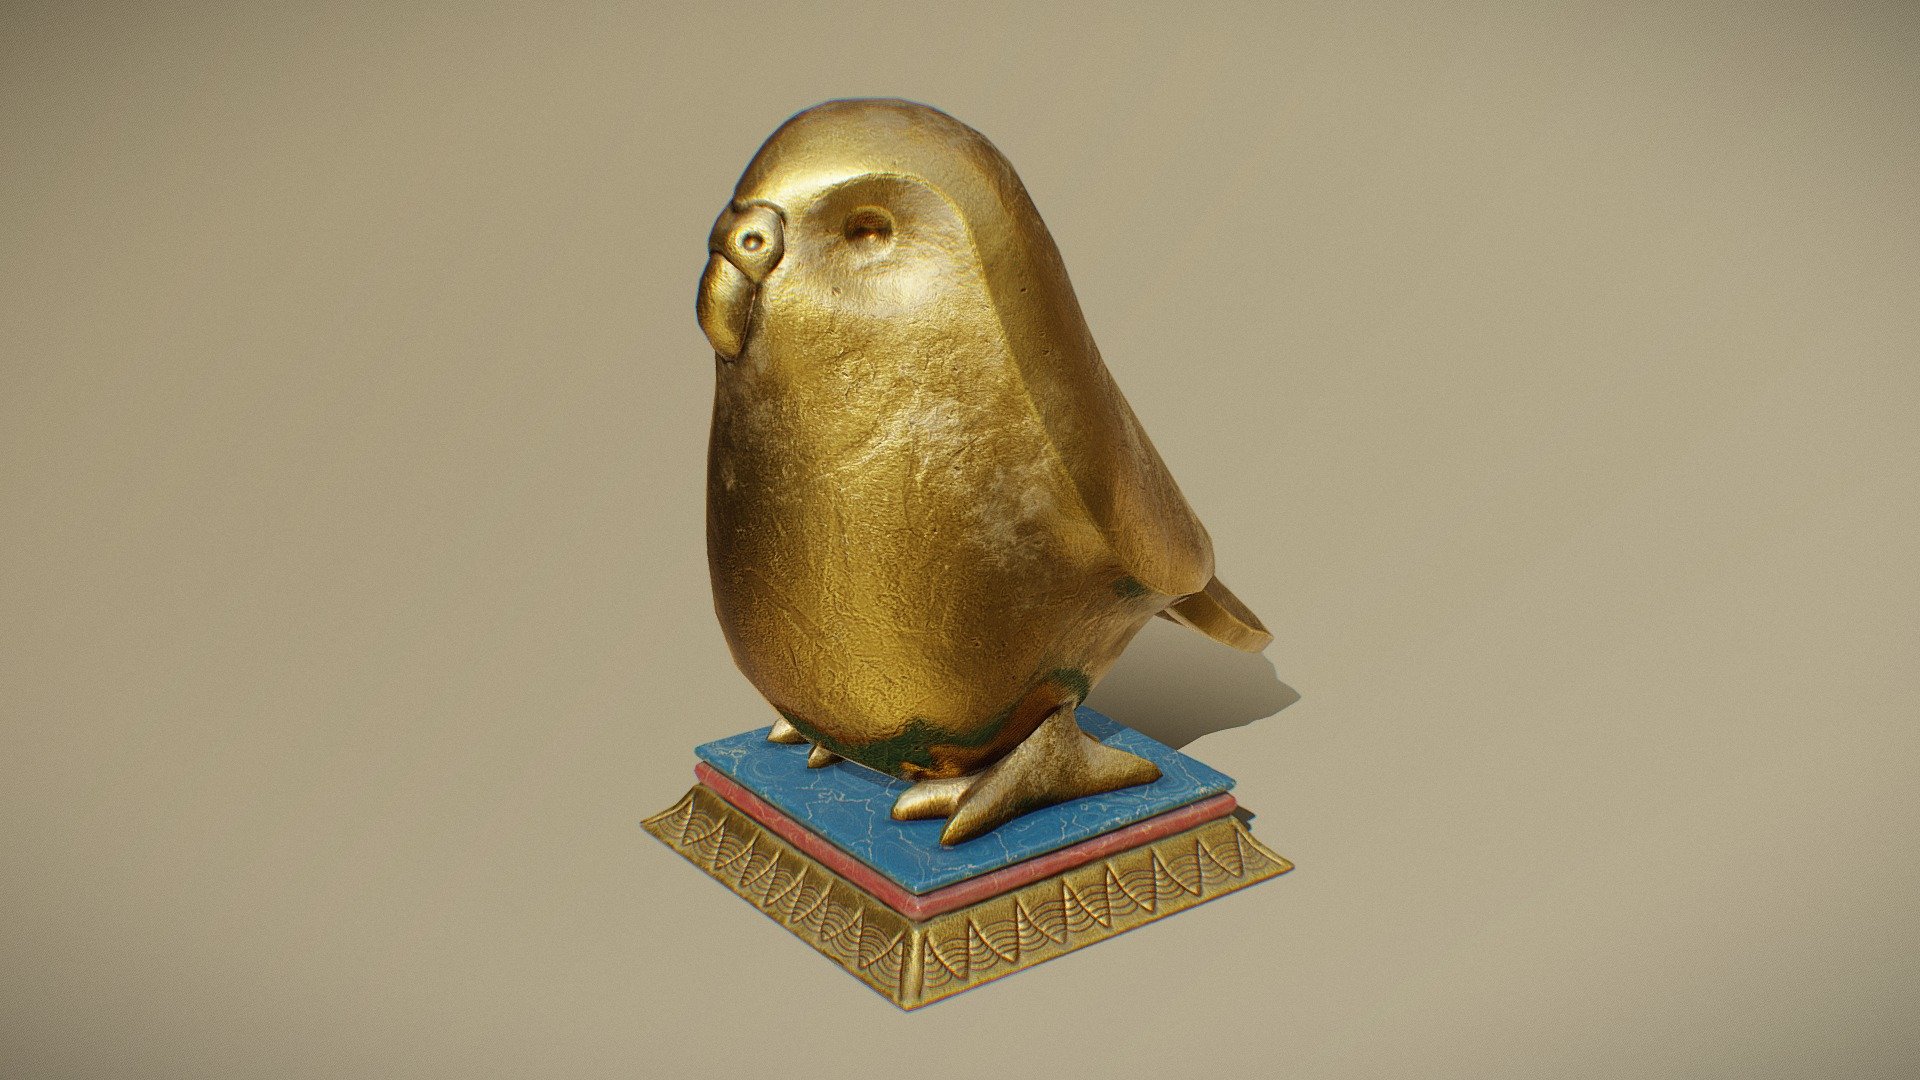 Kakapo Figurine - 3D model by 3D Chop Art (@3dchop) 3d model